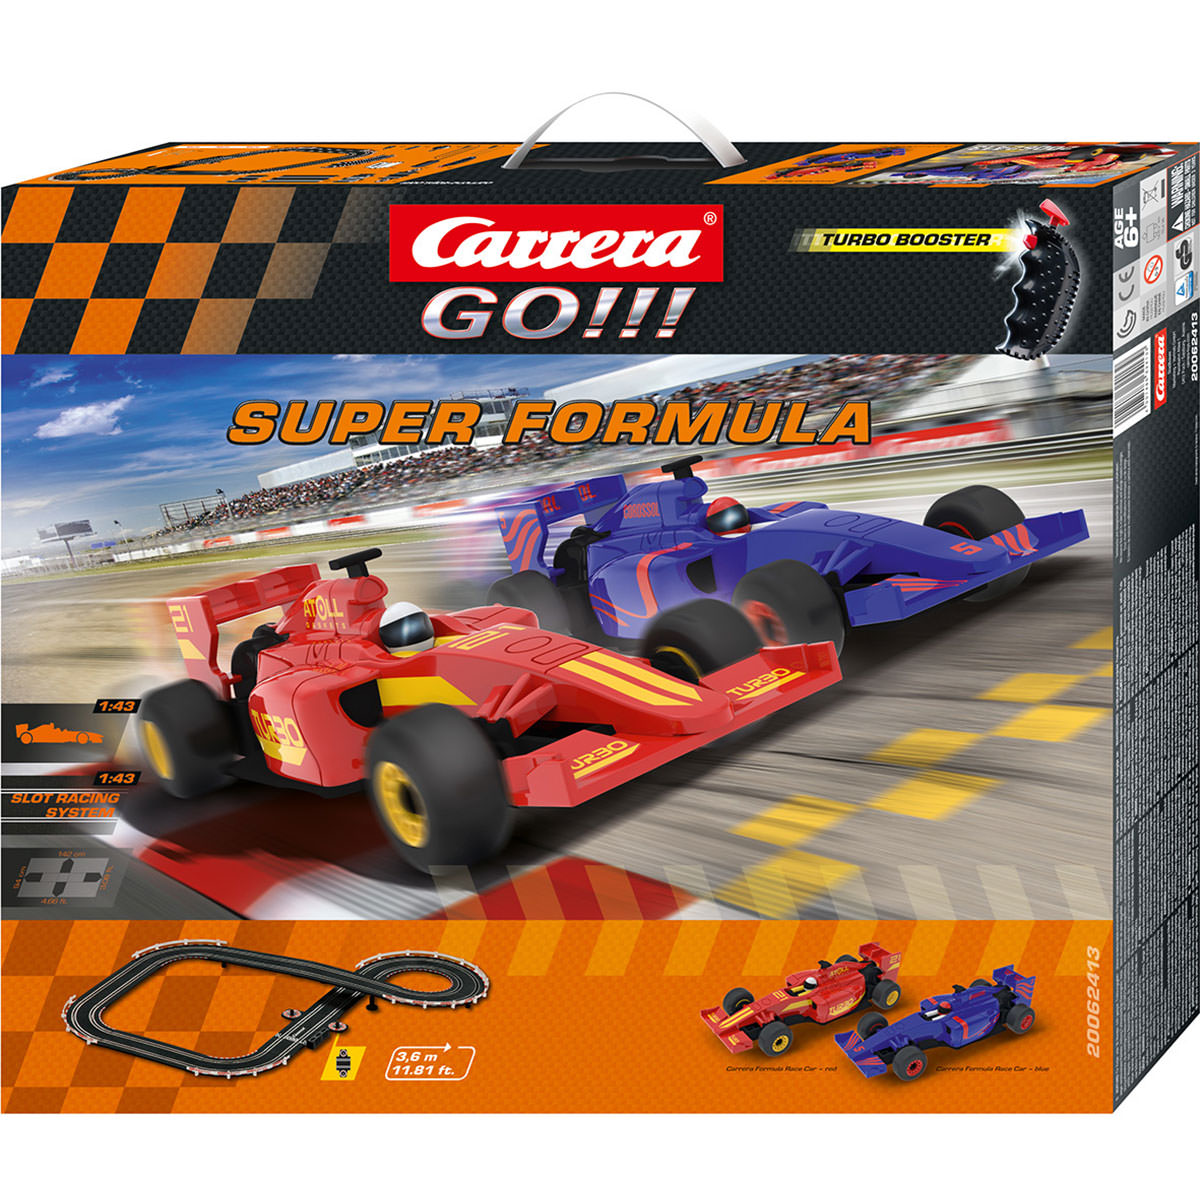 Buy Carrera Go!- Super Formular Slot Car Set, 1:43 (62413)